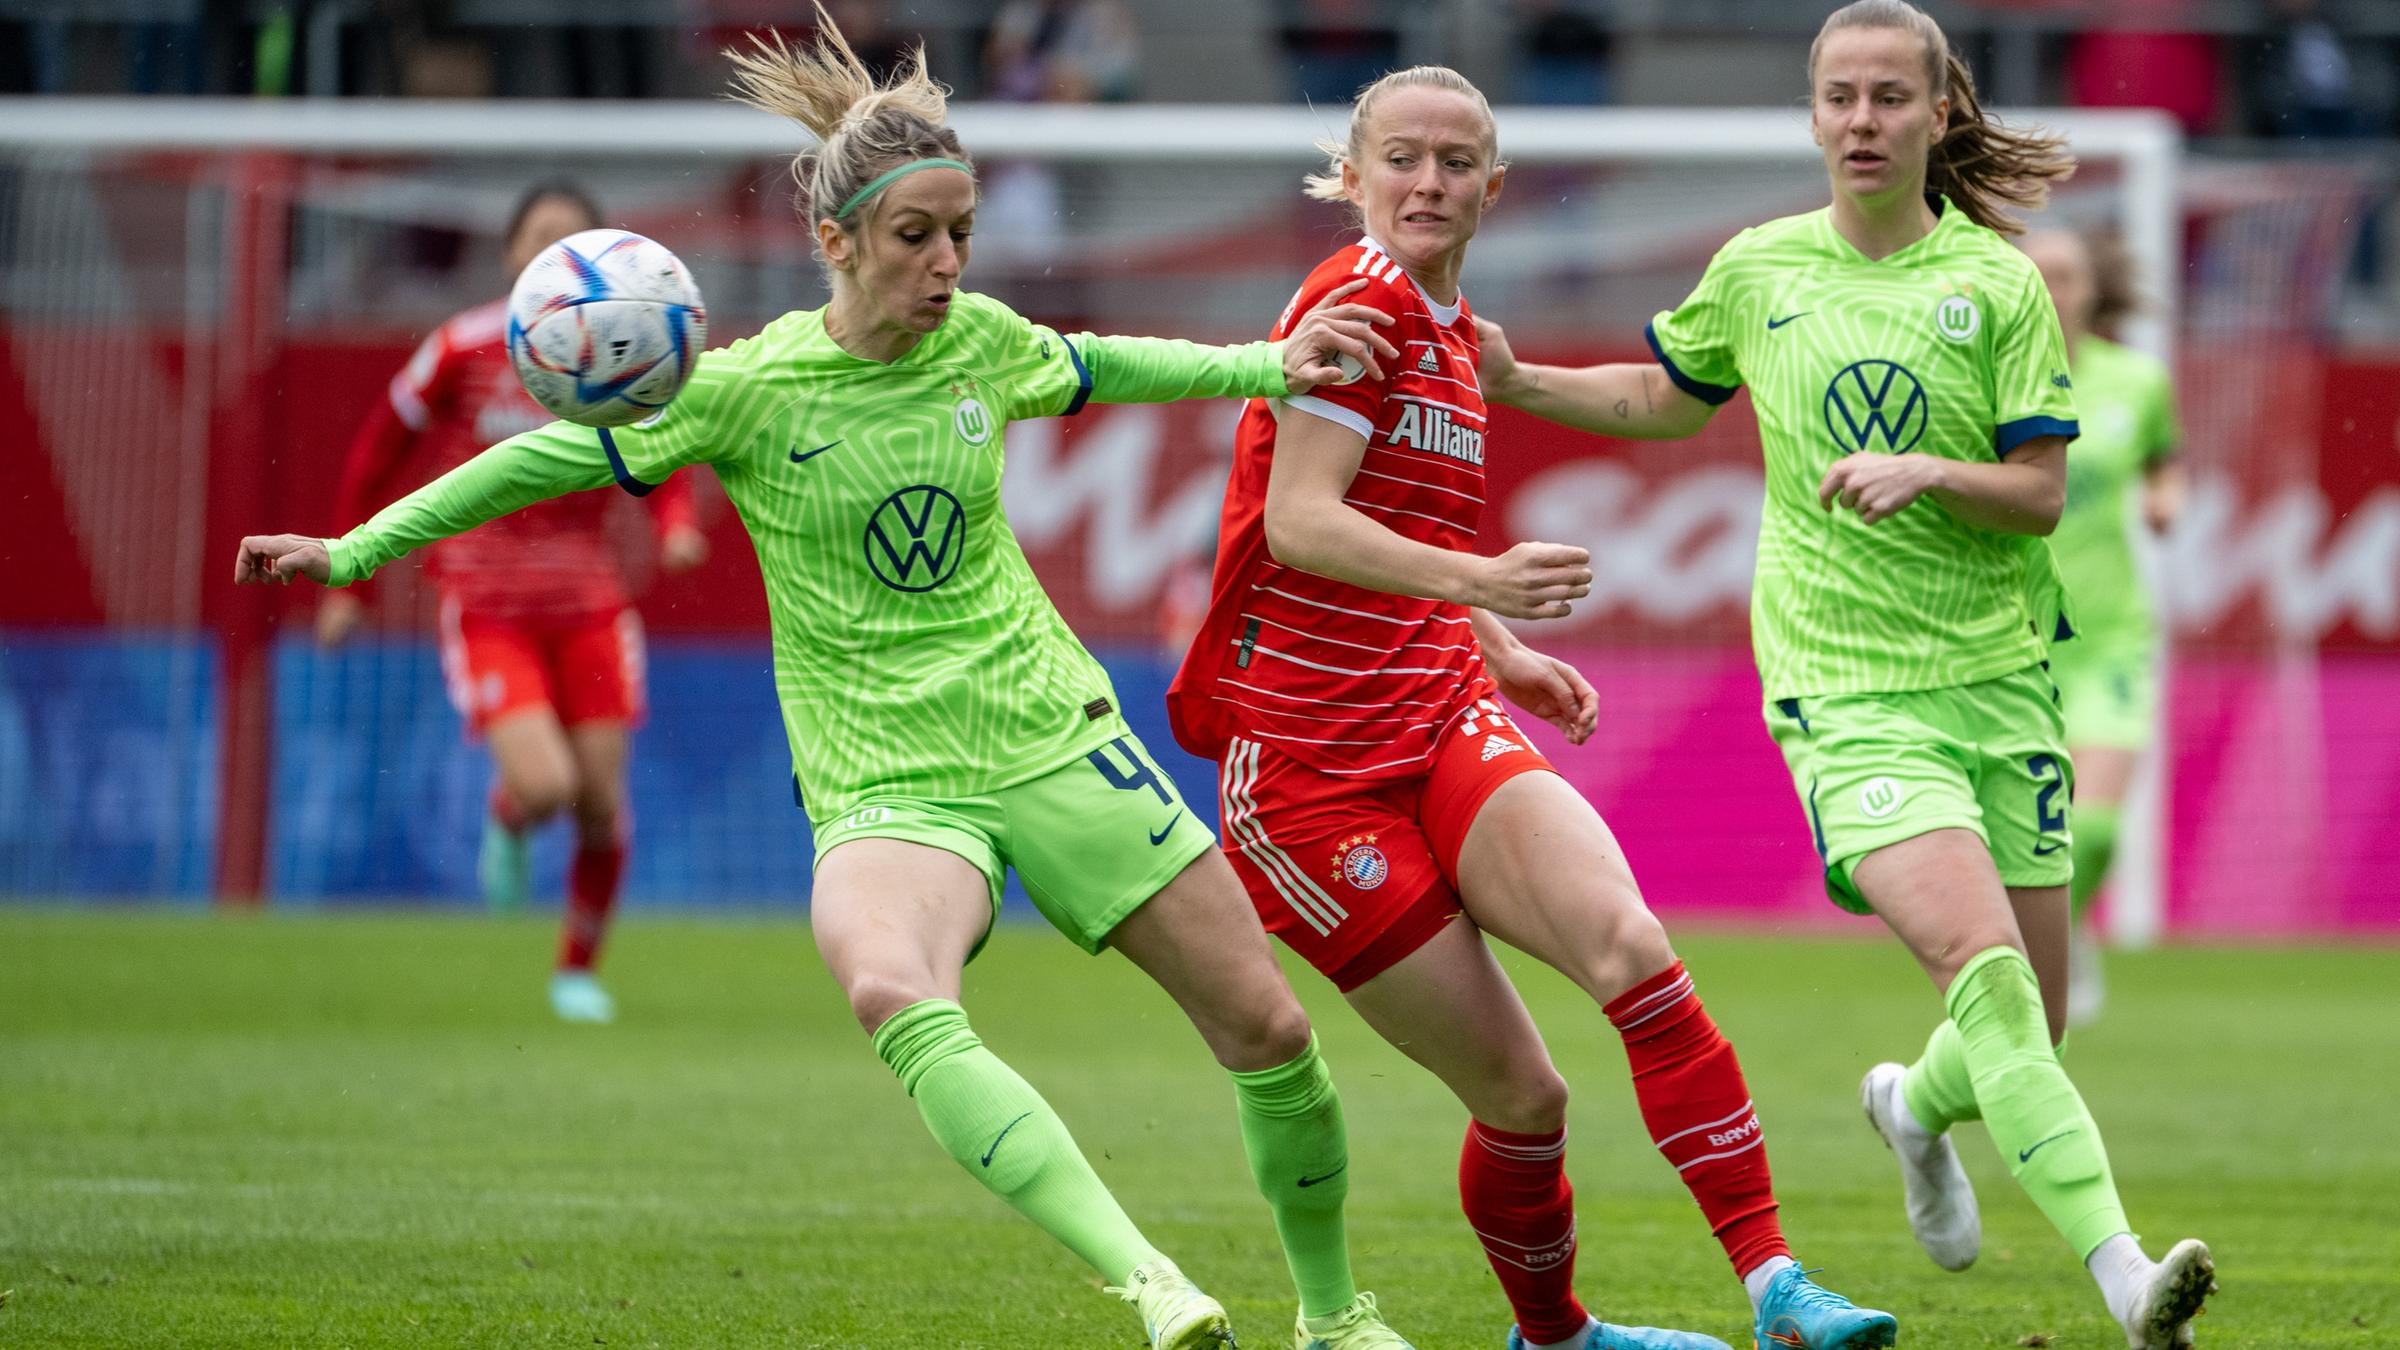 Topspiel der Frauen-Bundesliga zwischen Bayern und Wolfsburg